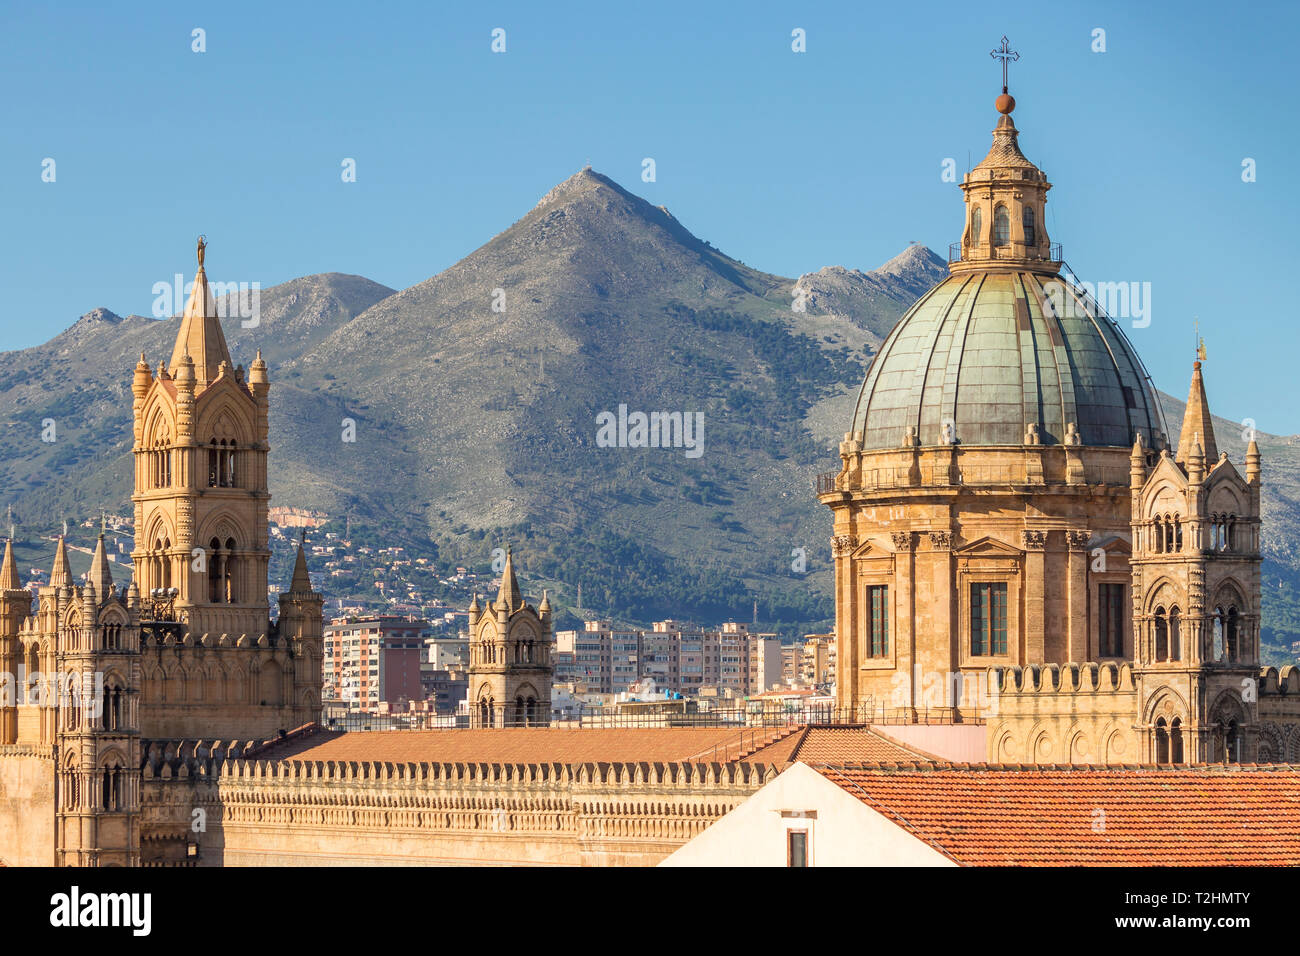 La coupole de la cathédrale de Palerme (Site du patrimoine mondial de l'UNESCO), Palerme, Sicile, Italie, Europe Banque D'Images